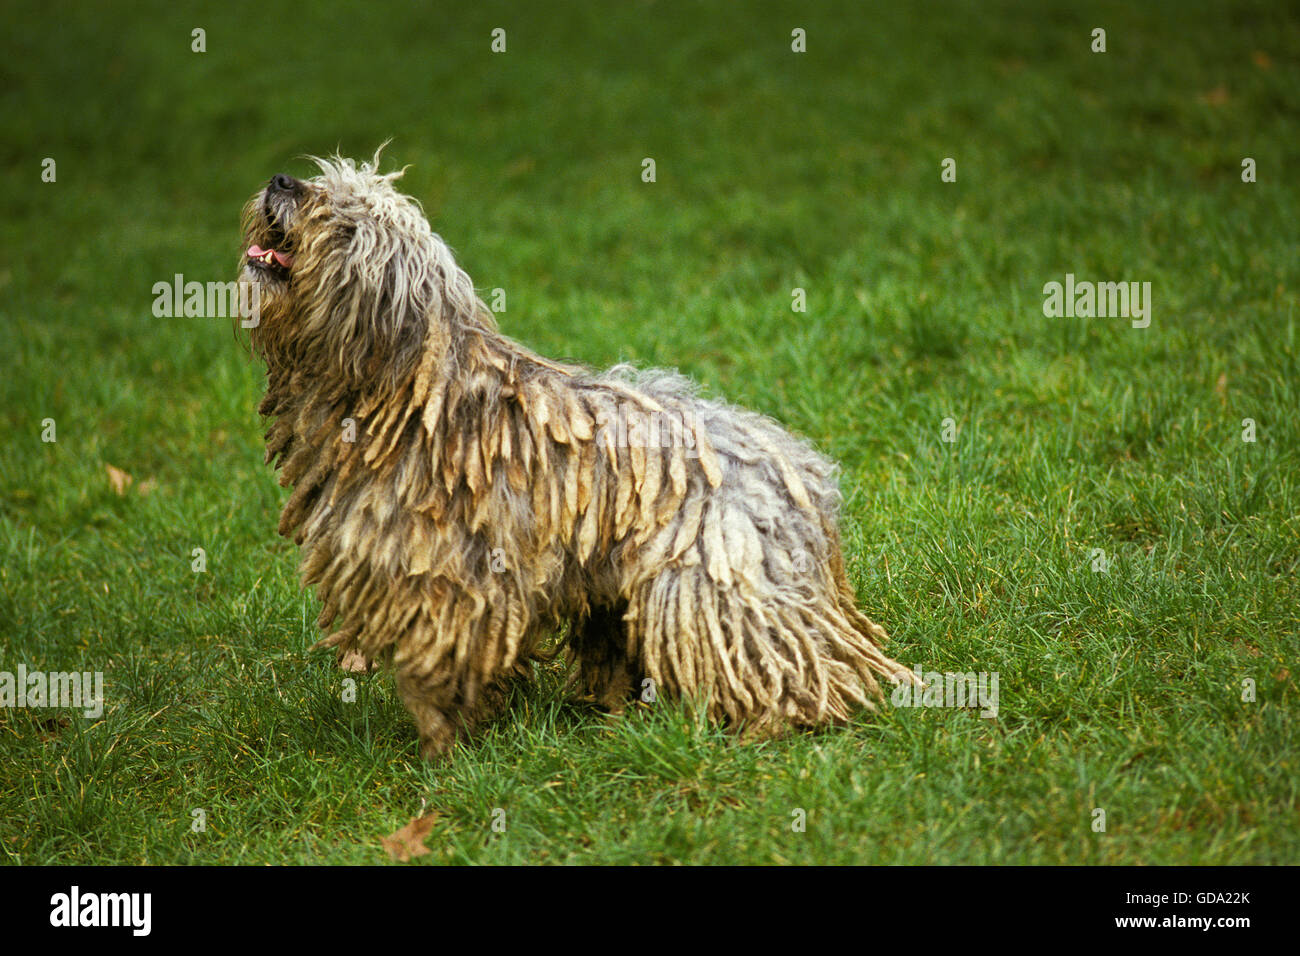 Bergamasco Sheepdog or Bergamese Shepherd, Adult standing on Grass Stock Photo